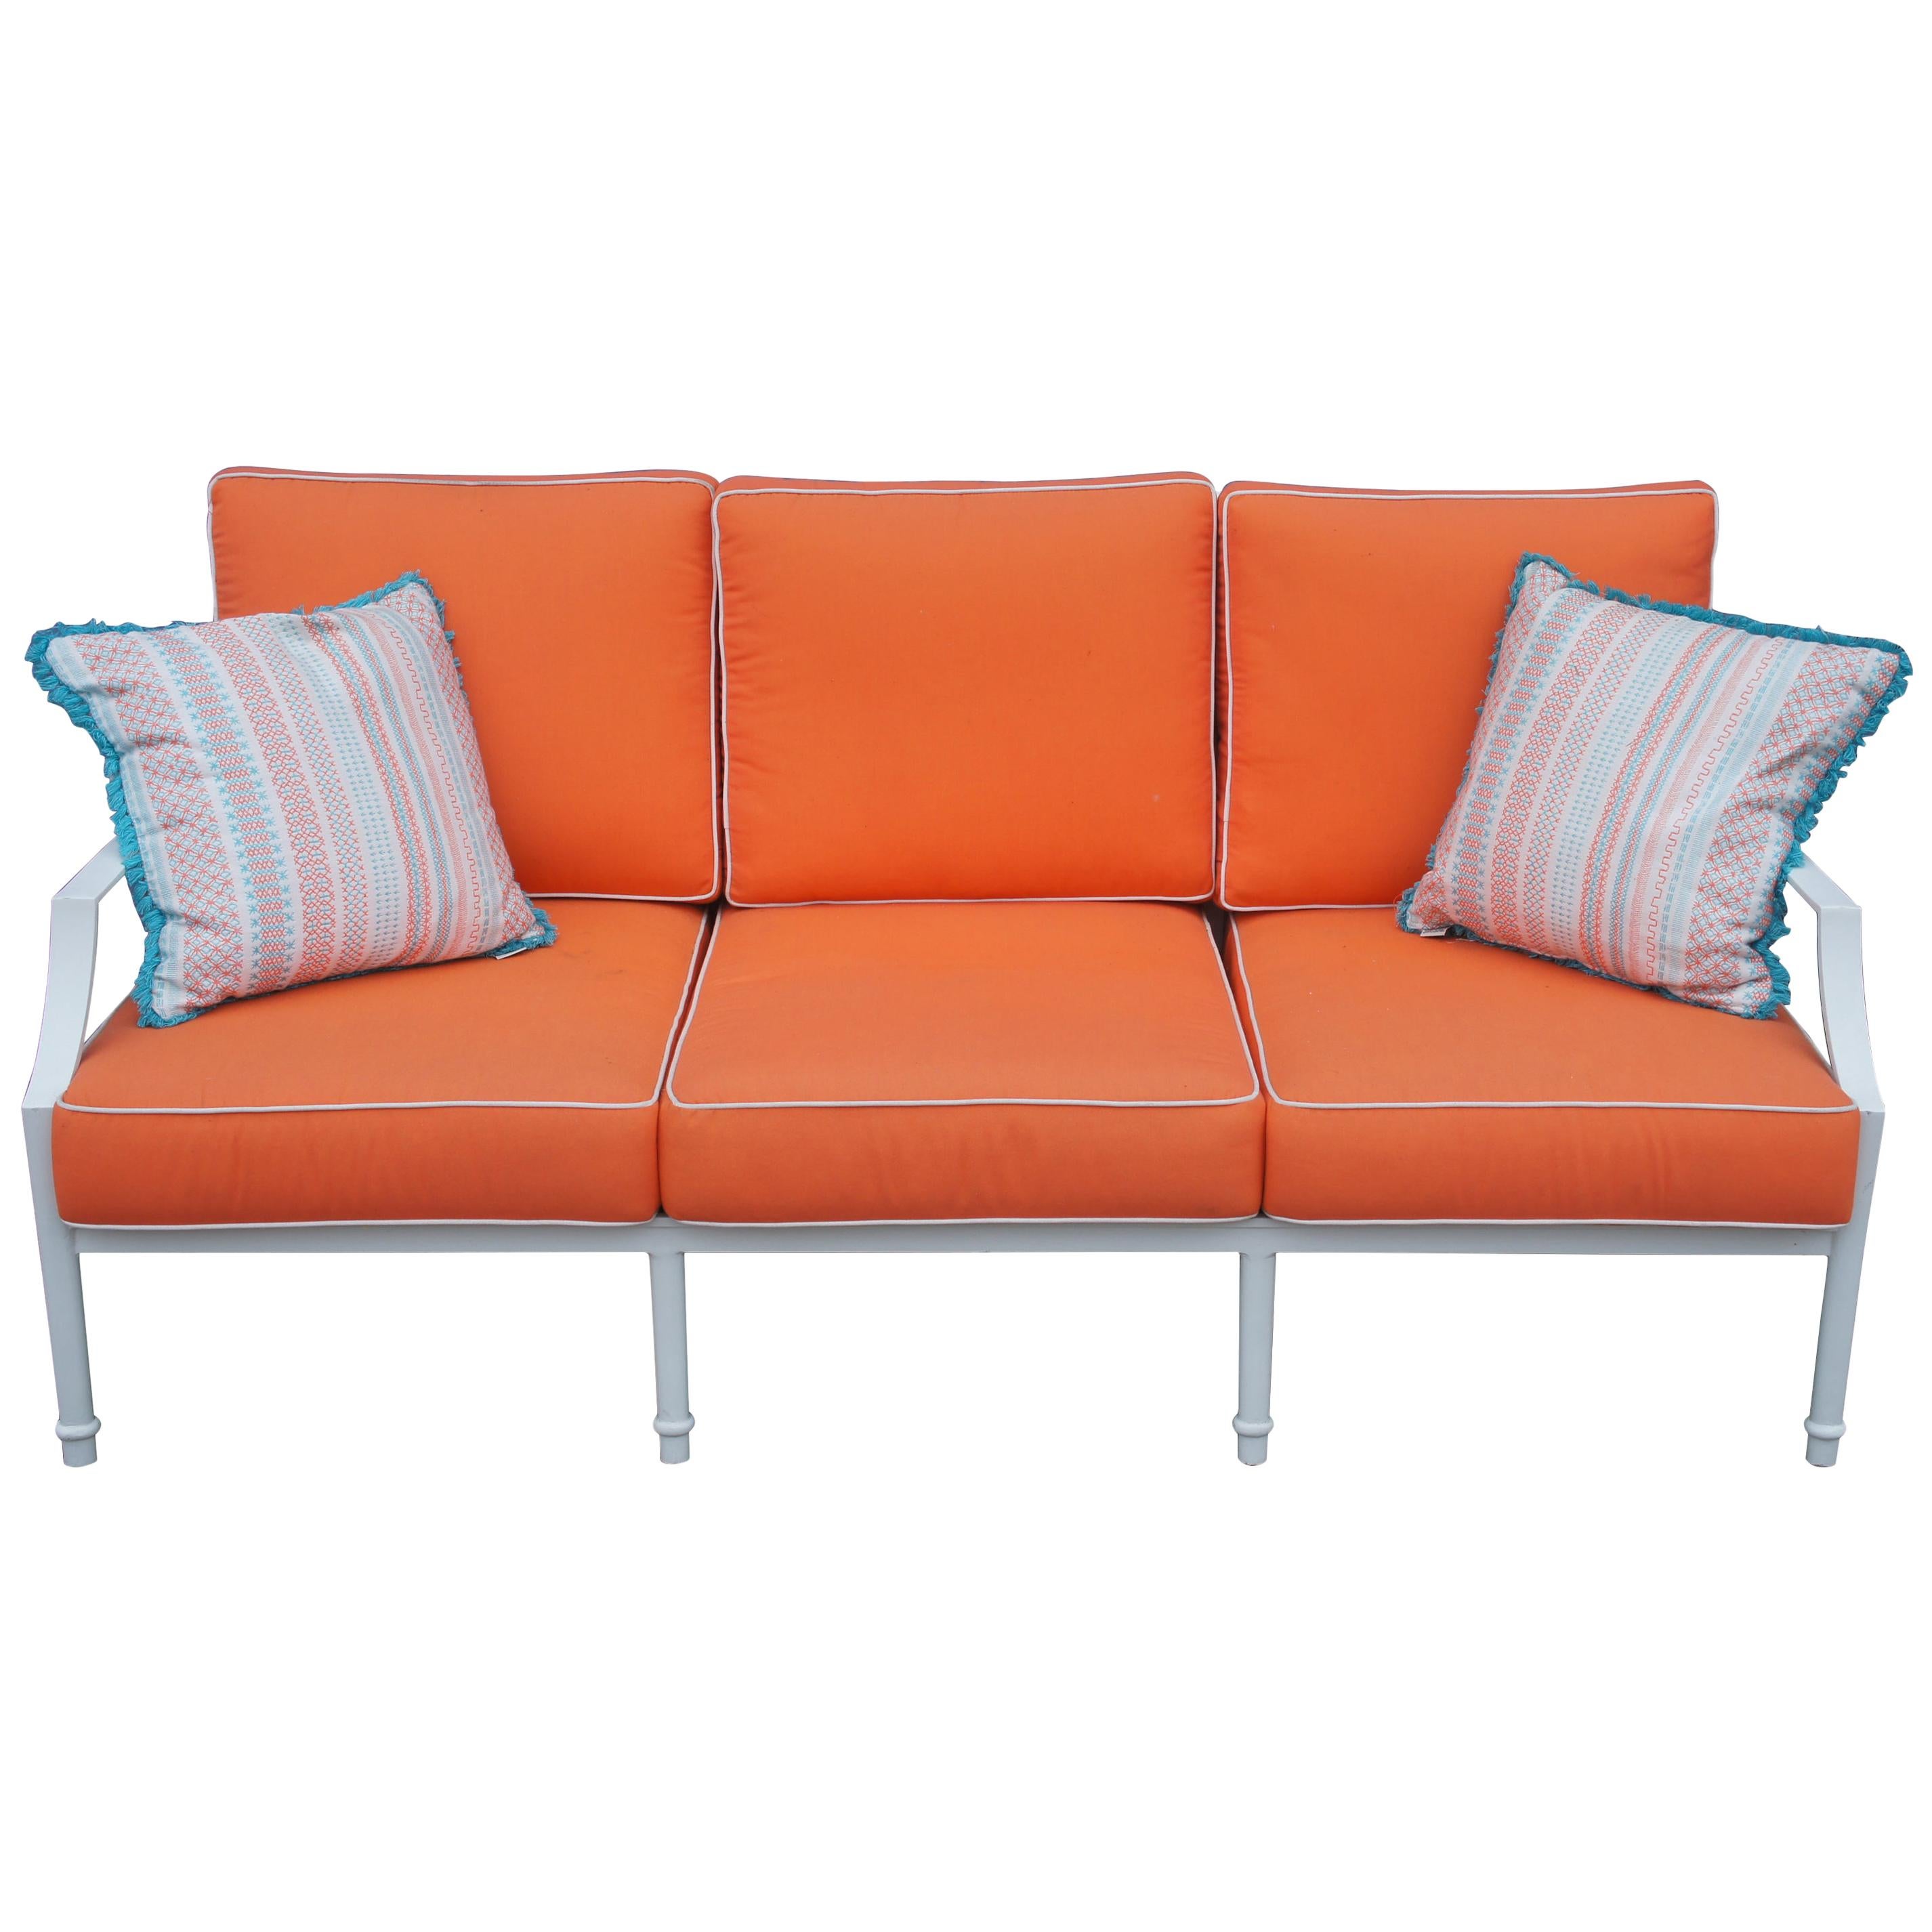 Grayson French Inspired Aluminum Sofa with Orange Cushions & Lattice Back 28070